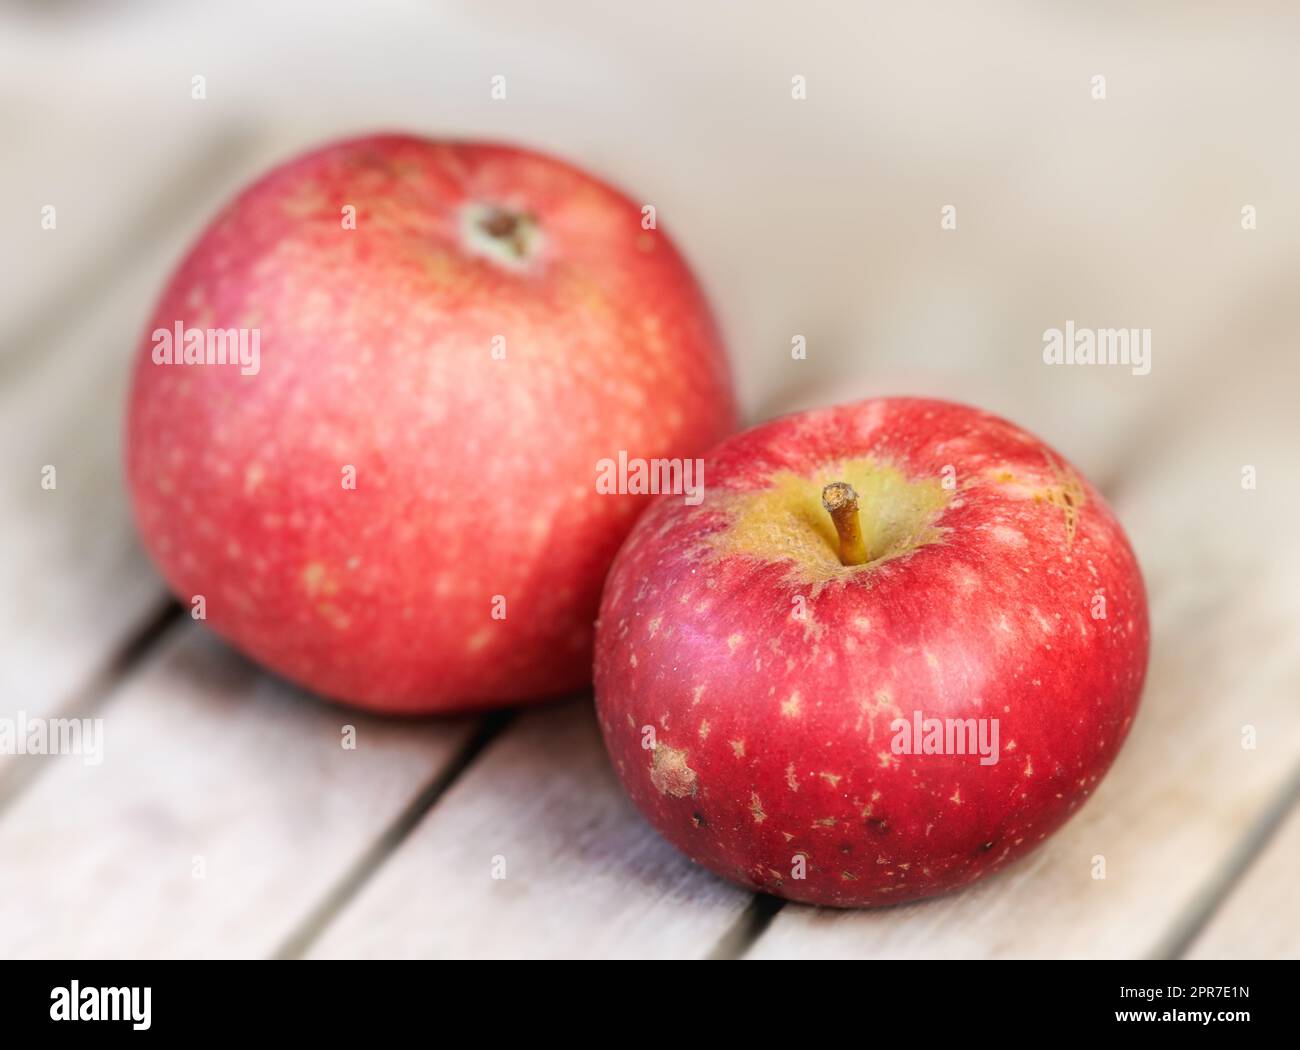 Zwei rote Äpfel auf einem Holztisch drinnen. Essen Sie gesund und achten Sie auf Ihre Ernährung. Obst enthält wichtige Vitamine, um Ihre Immunität zu stärken. Nahaufnahme eines köstlichen Snacks, den Veganer und Vegetarier genießen können Stockfoto